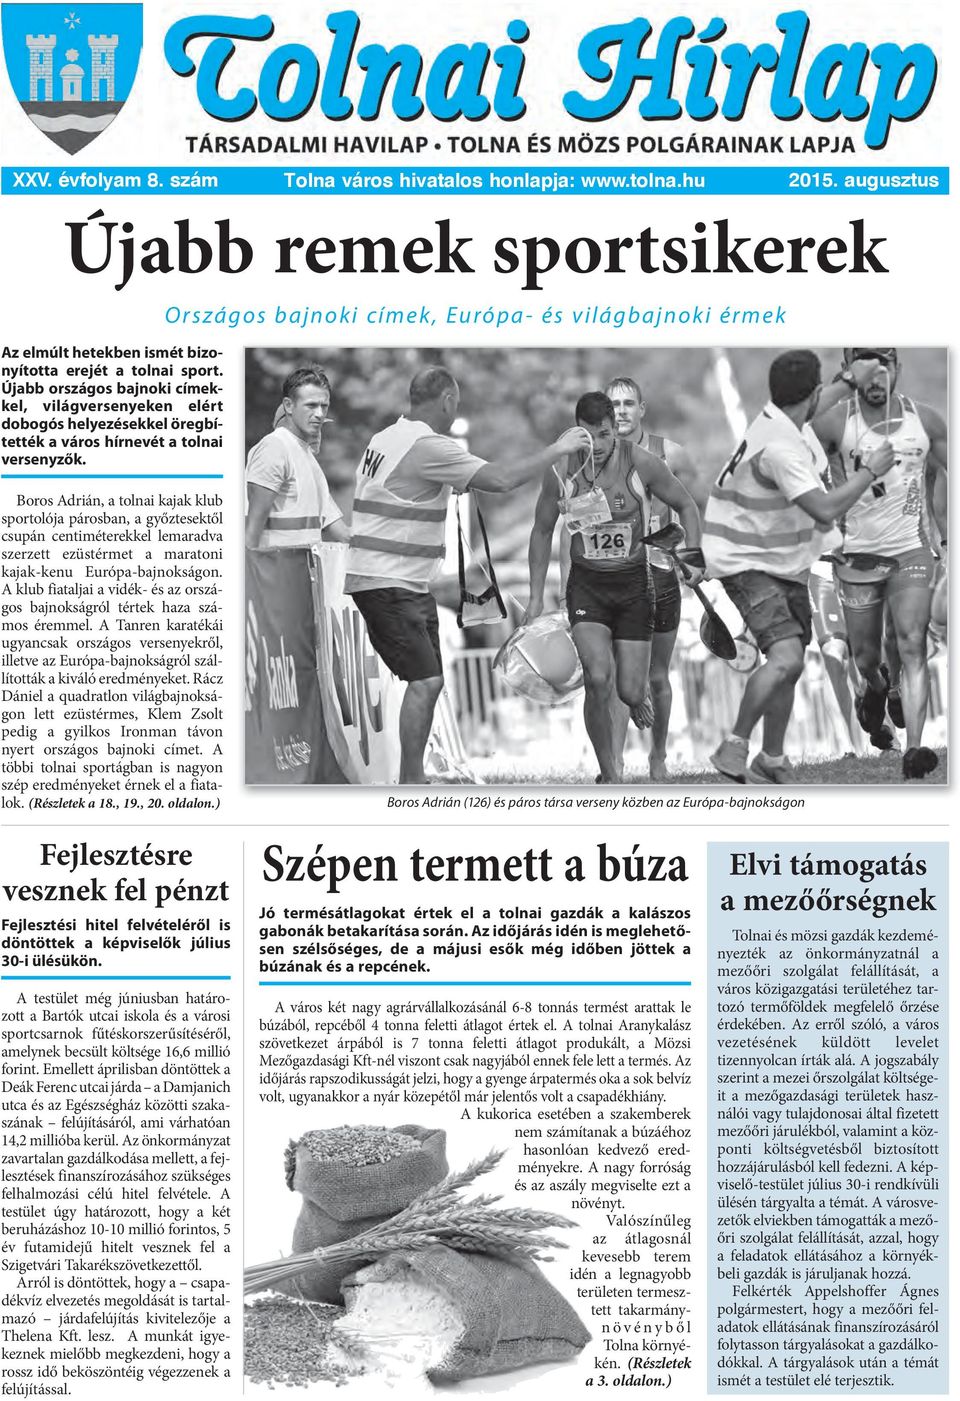 Országos bajnoki címek, Európa- és világbajnoki érmek Boros Adrián, a tolnai kajak klub sportolója párosban, a győztesektől csupán centiméterekkel lemaradva szerzett ezüstérmet a maratoni kajak-kenu